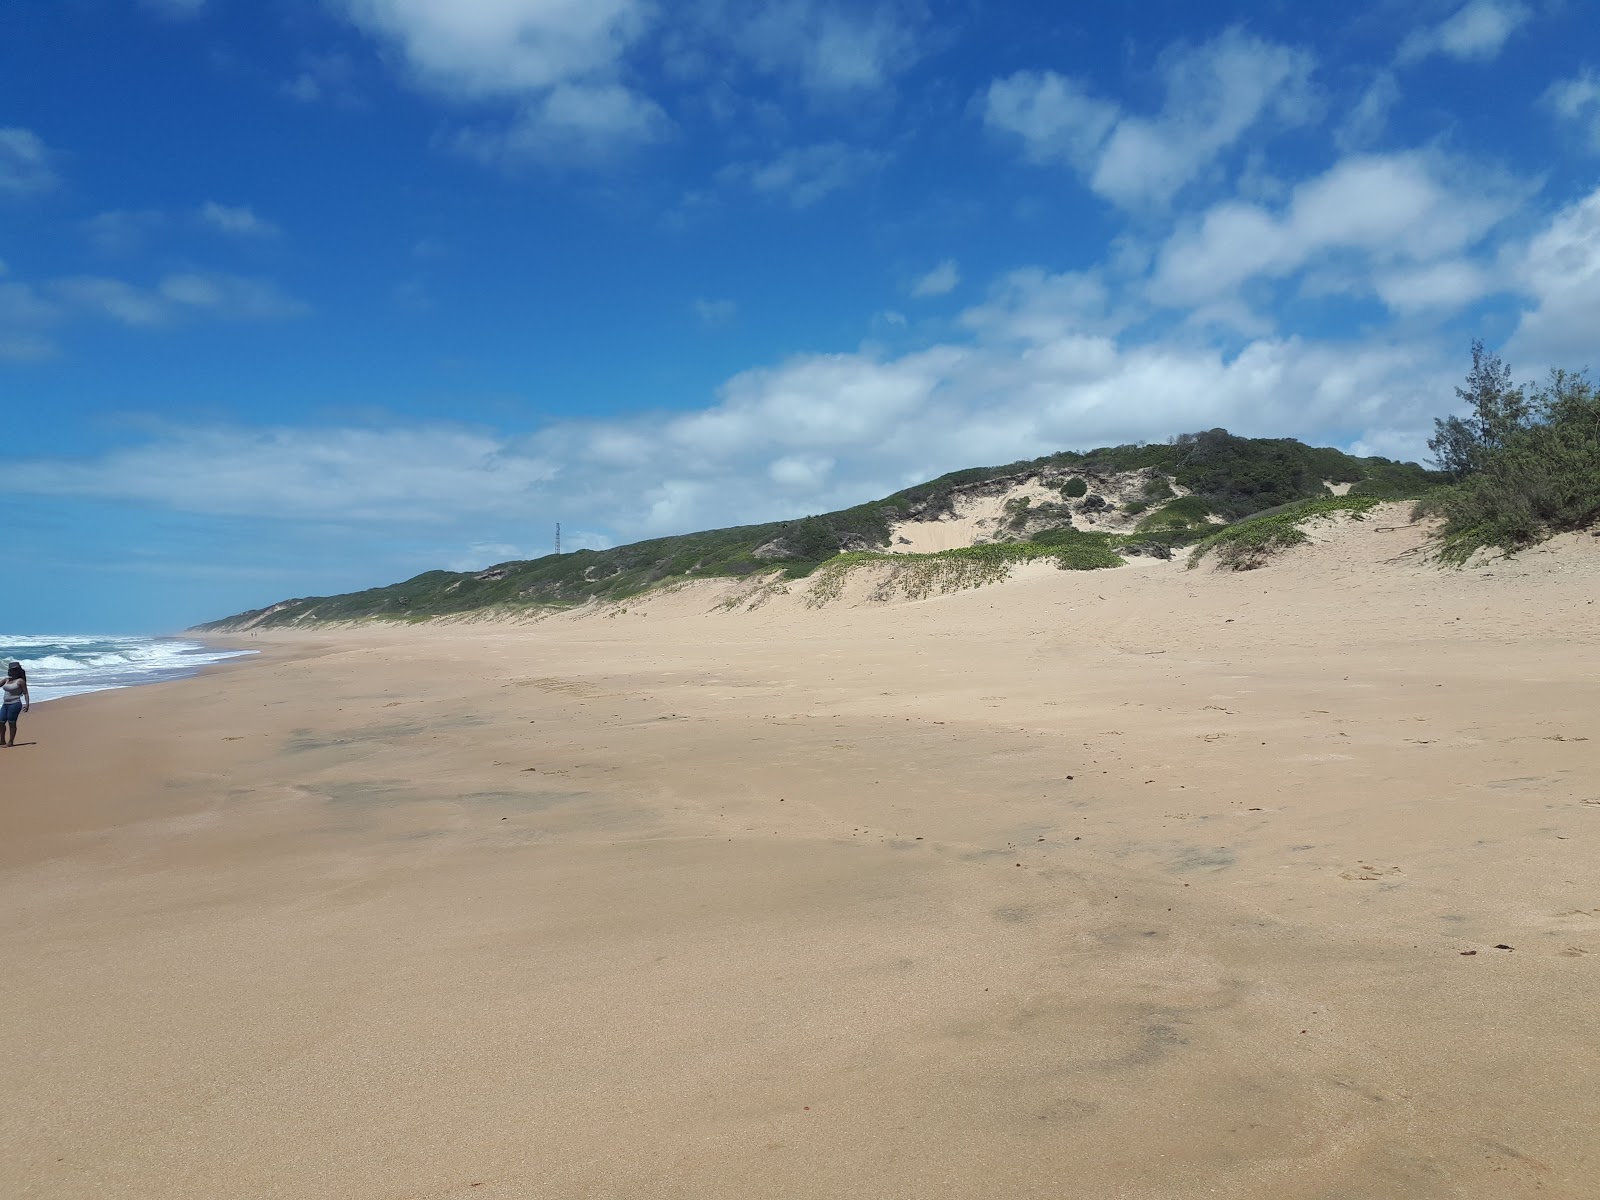 Fotografie cu Praia de Chidenguele cu o suprafață de nisip strălucitor